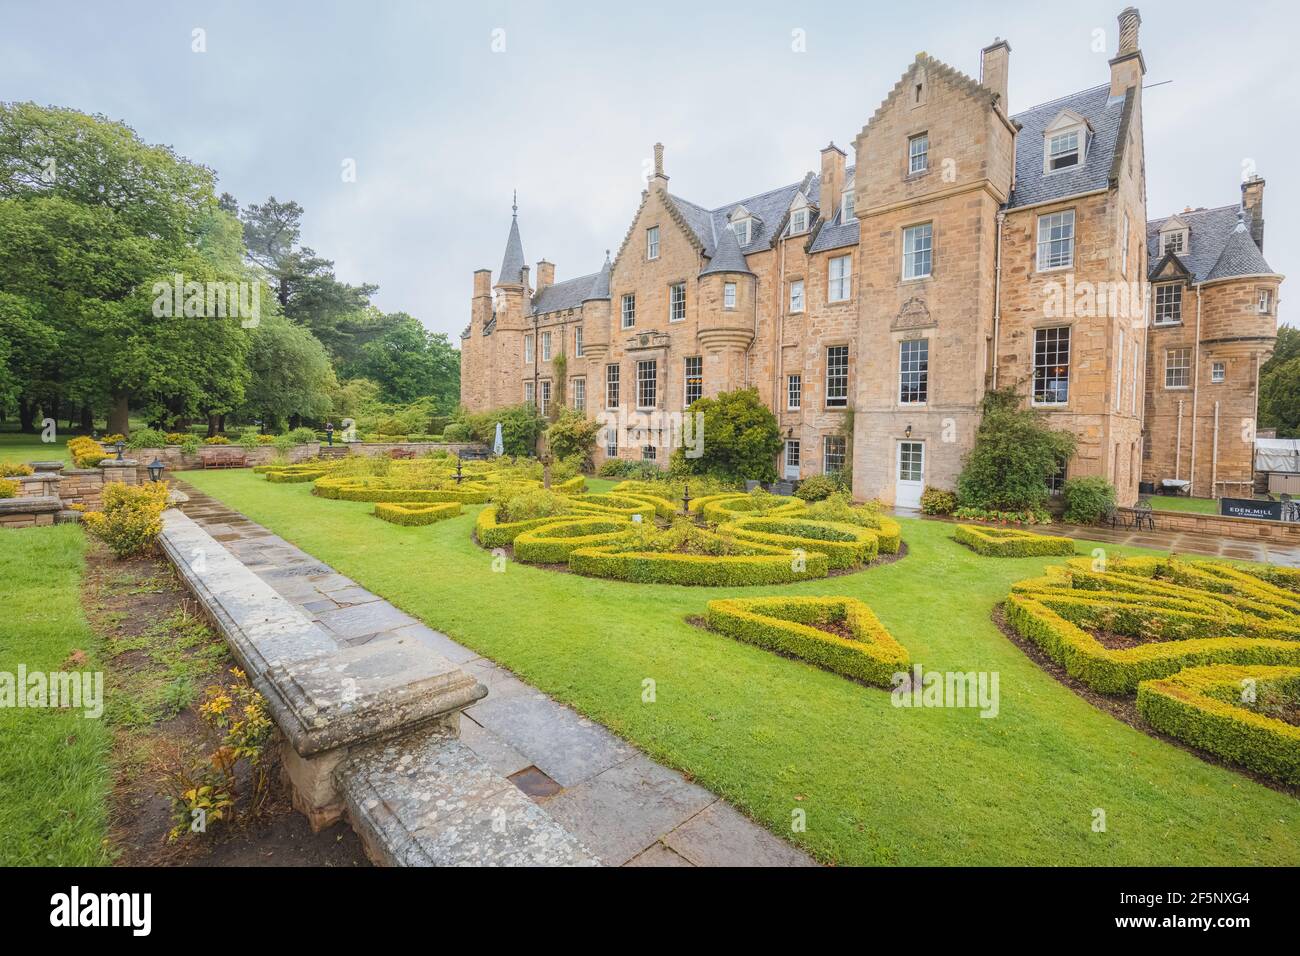 Musselburgh, Écosse - juin 5 2019 : jardins paysagers et manoir de la maison historique Carberry Tower Mansion House du XVe siècle à Musselburgh, Écosse Banque D'Images